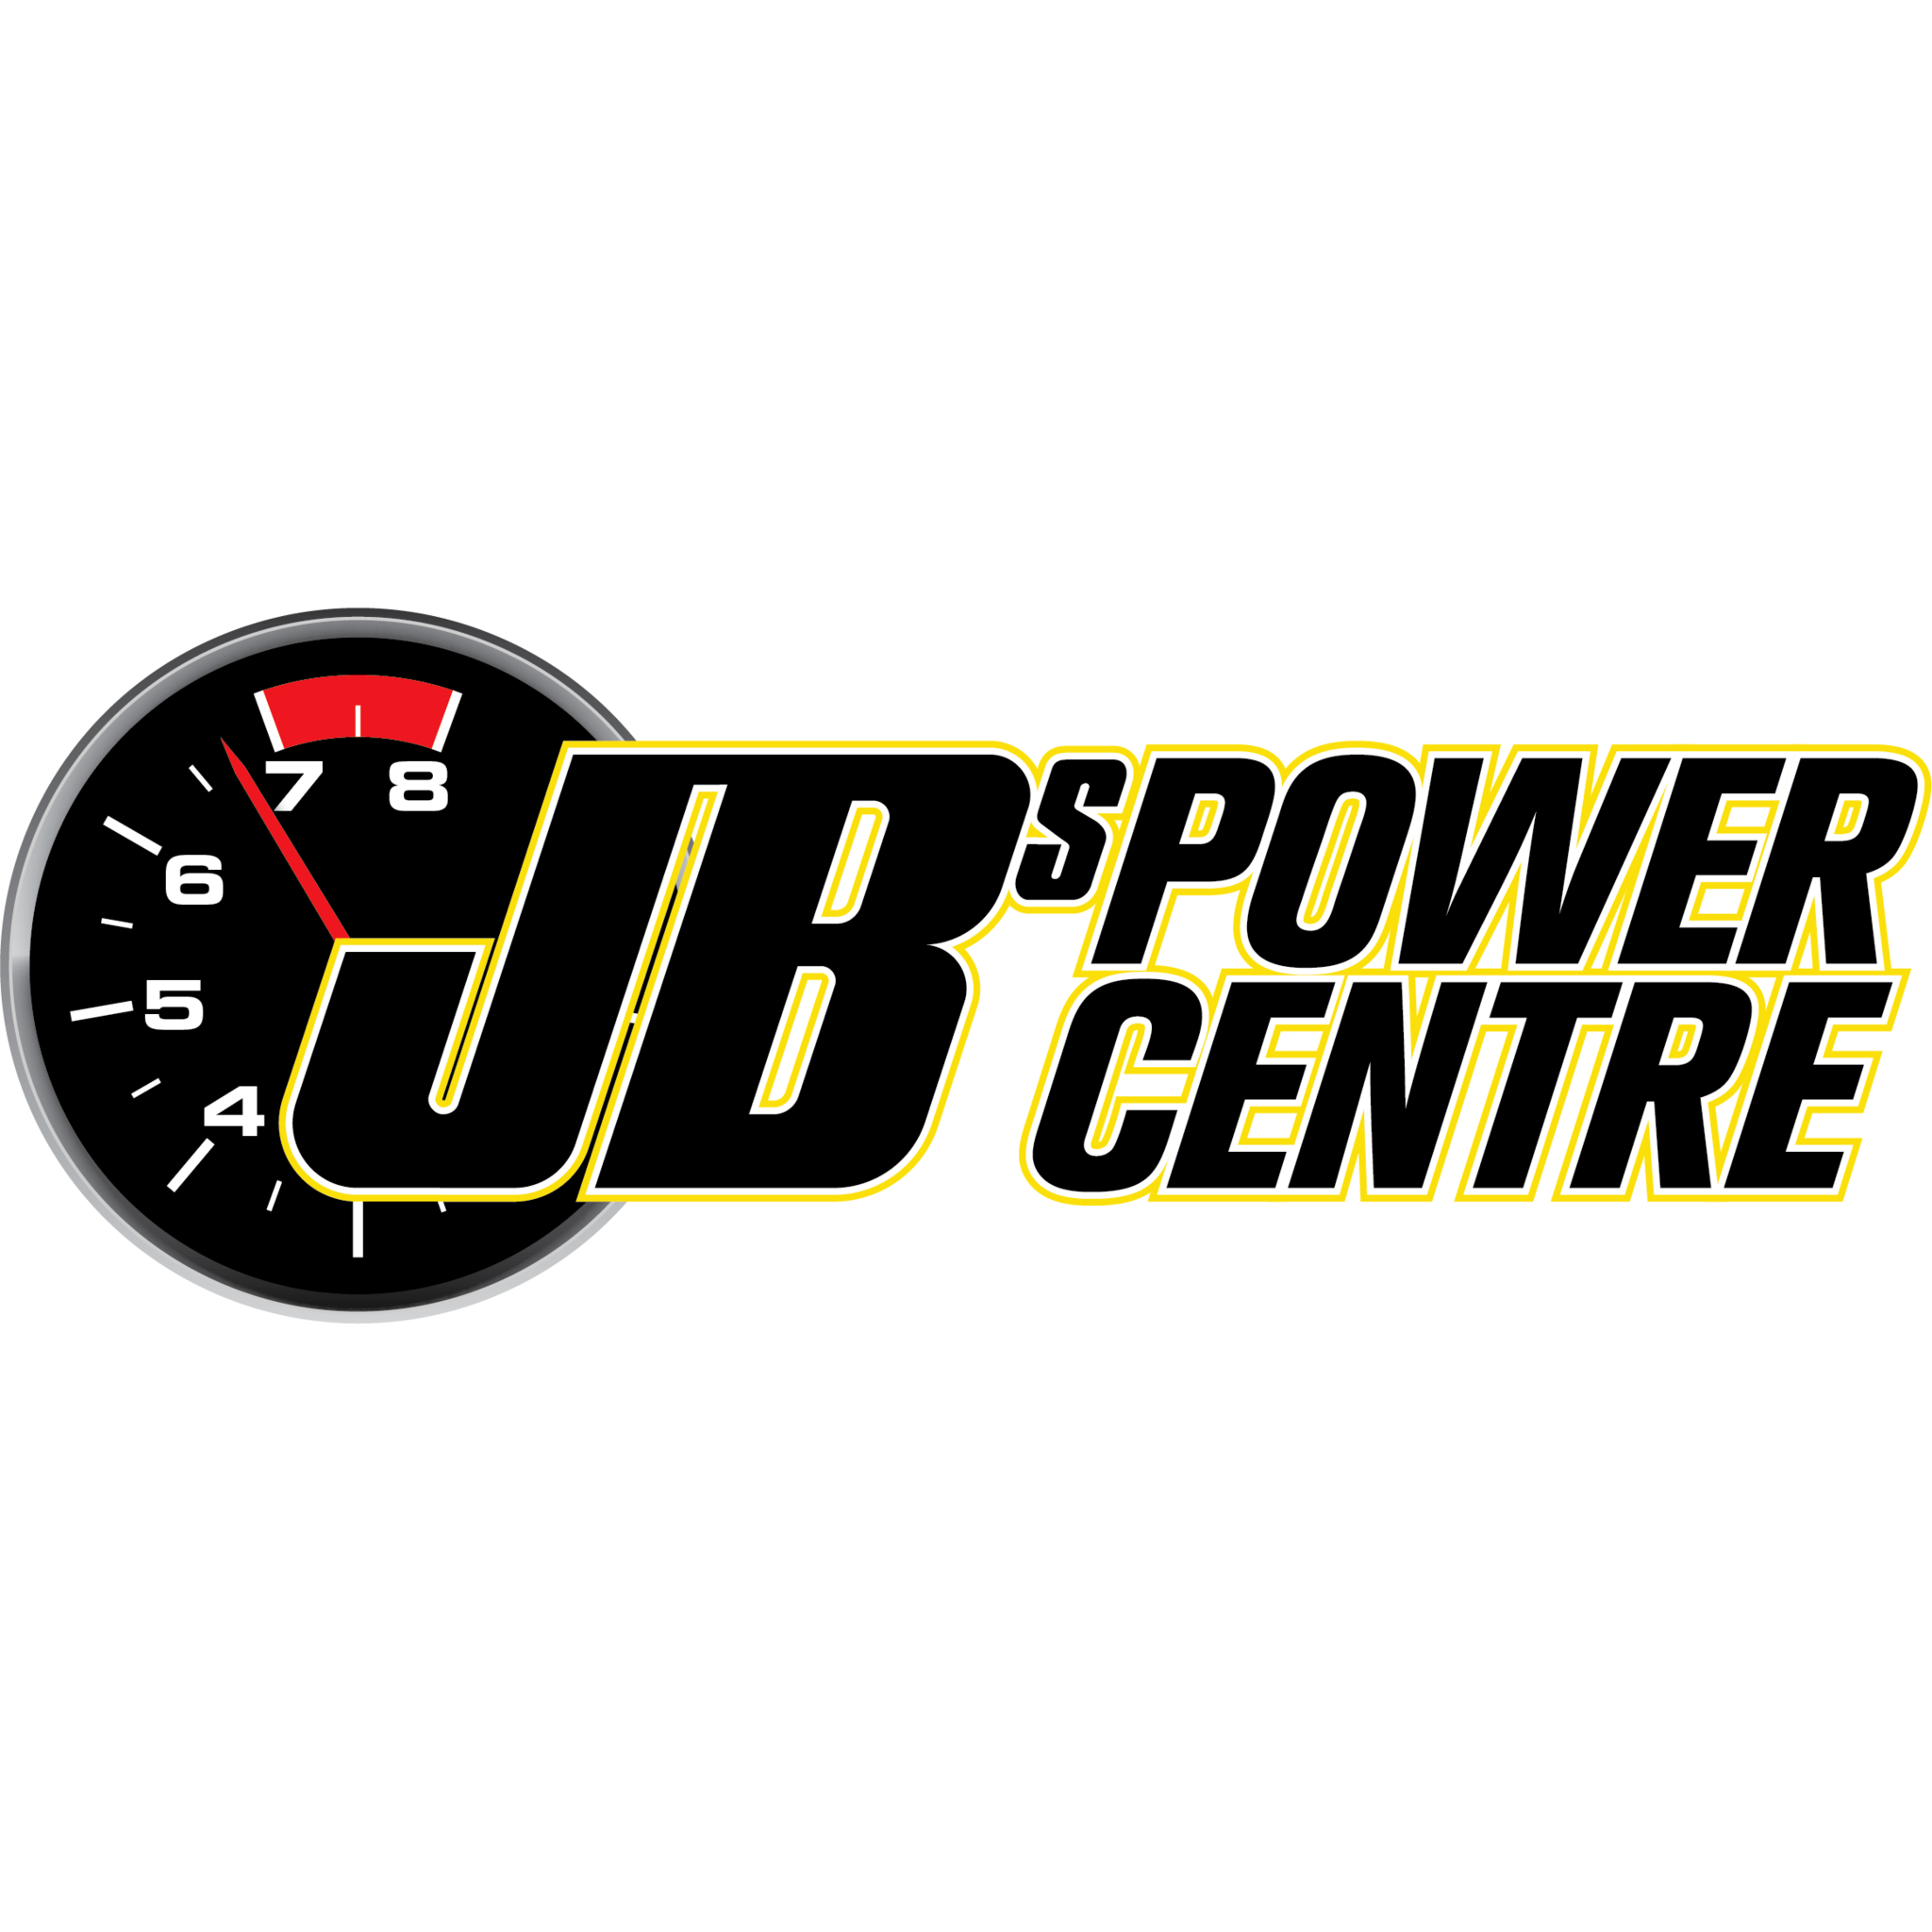 JBs Power Centre Ltd - Finition spéciale et accessoires d'autos